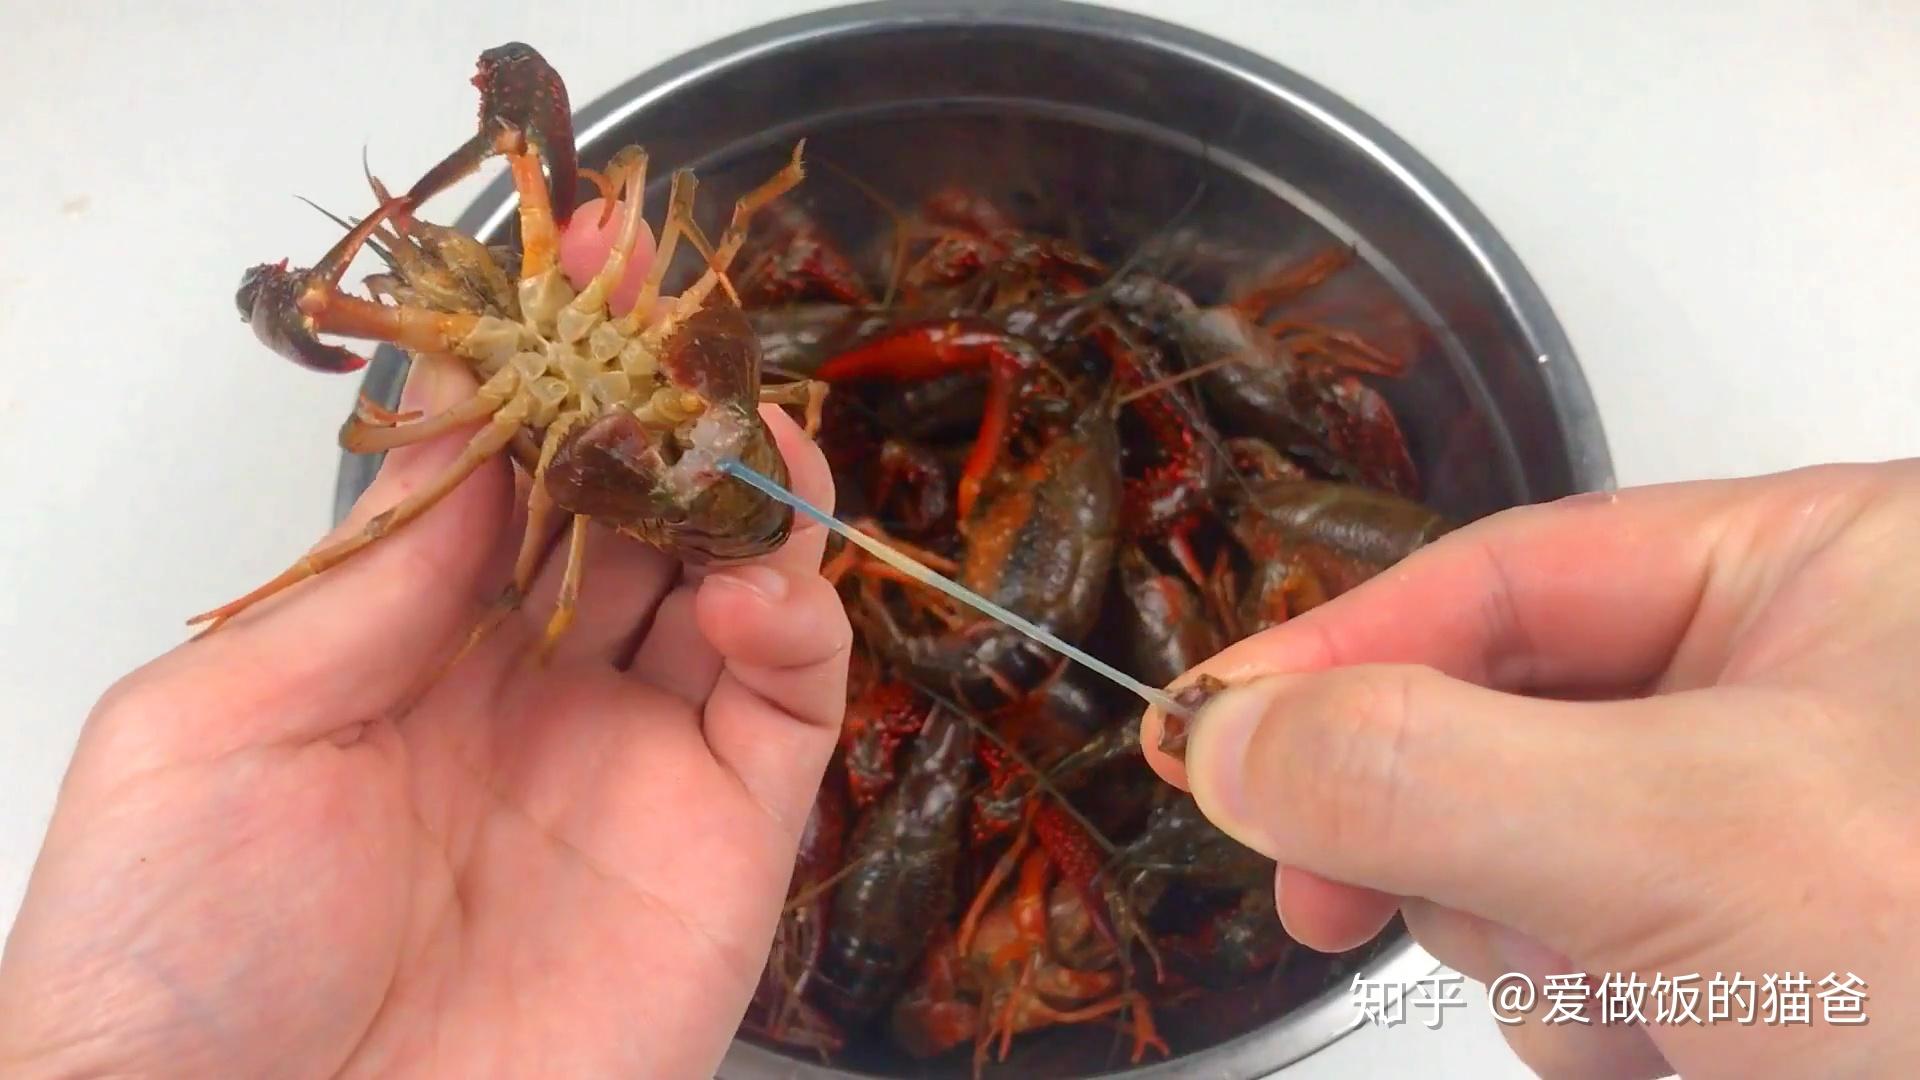 日本禁售小龙虾的原因何在？我国咬牙对付小龙虾10多年，吃货大败